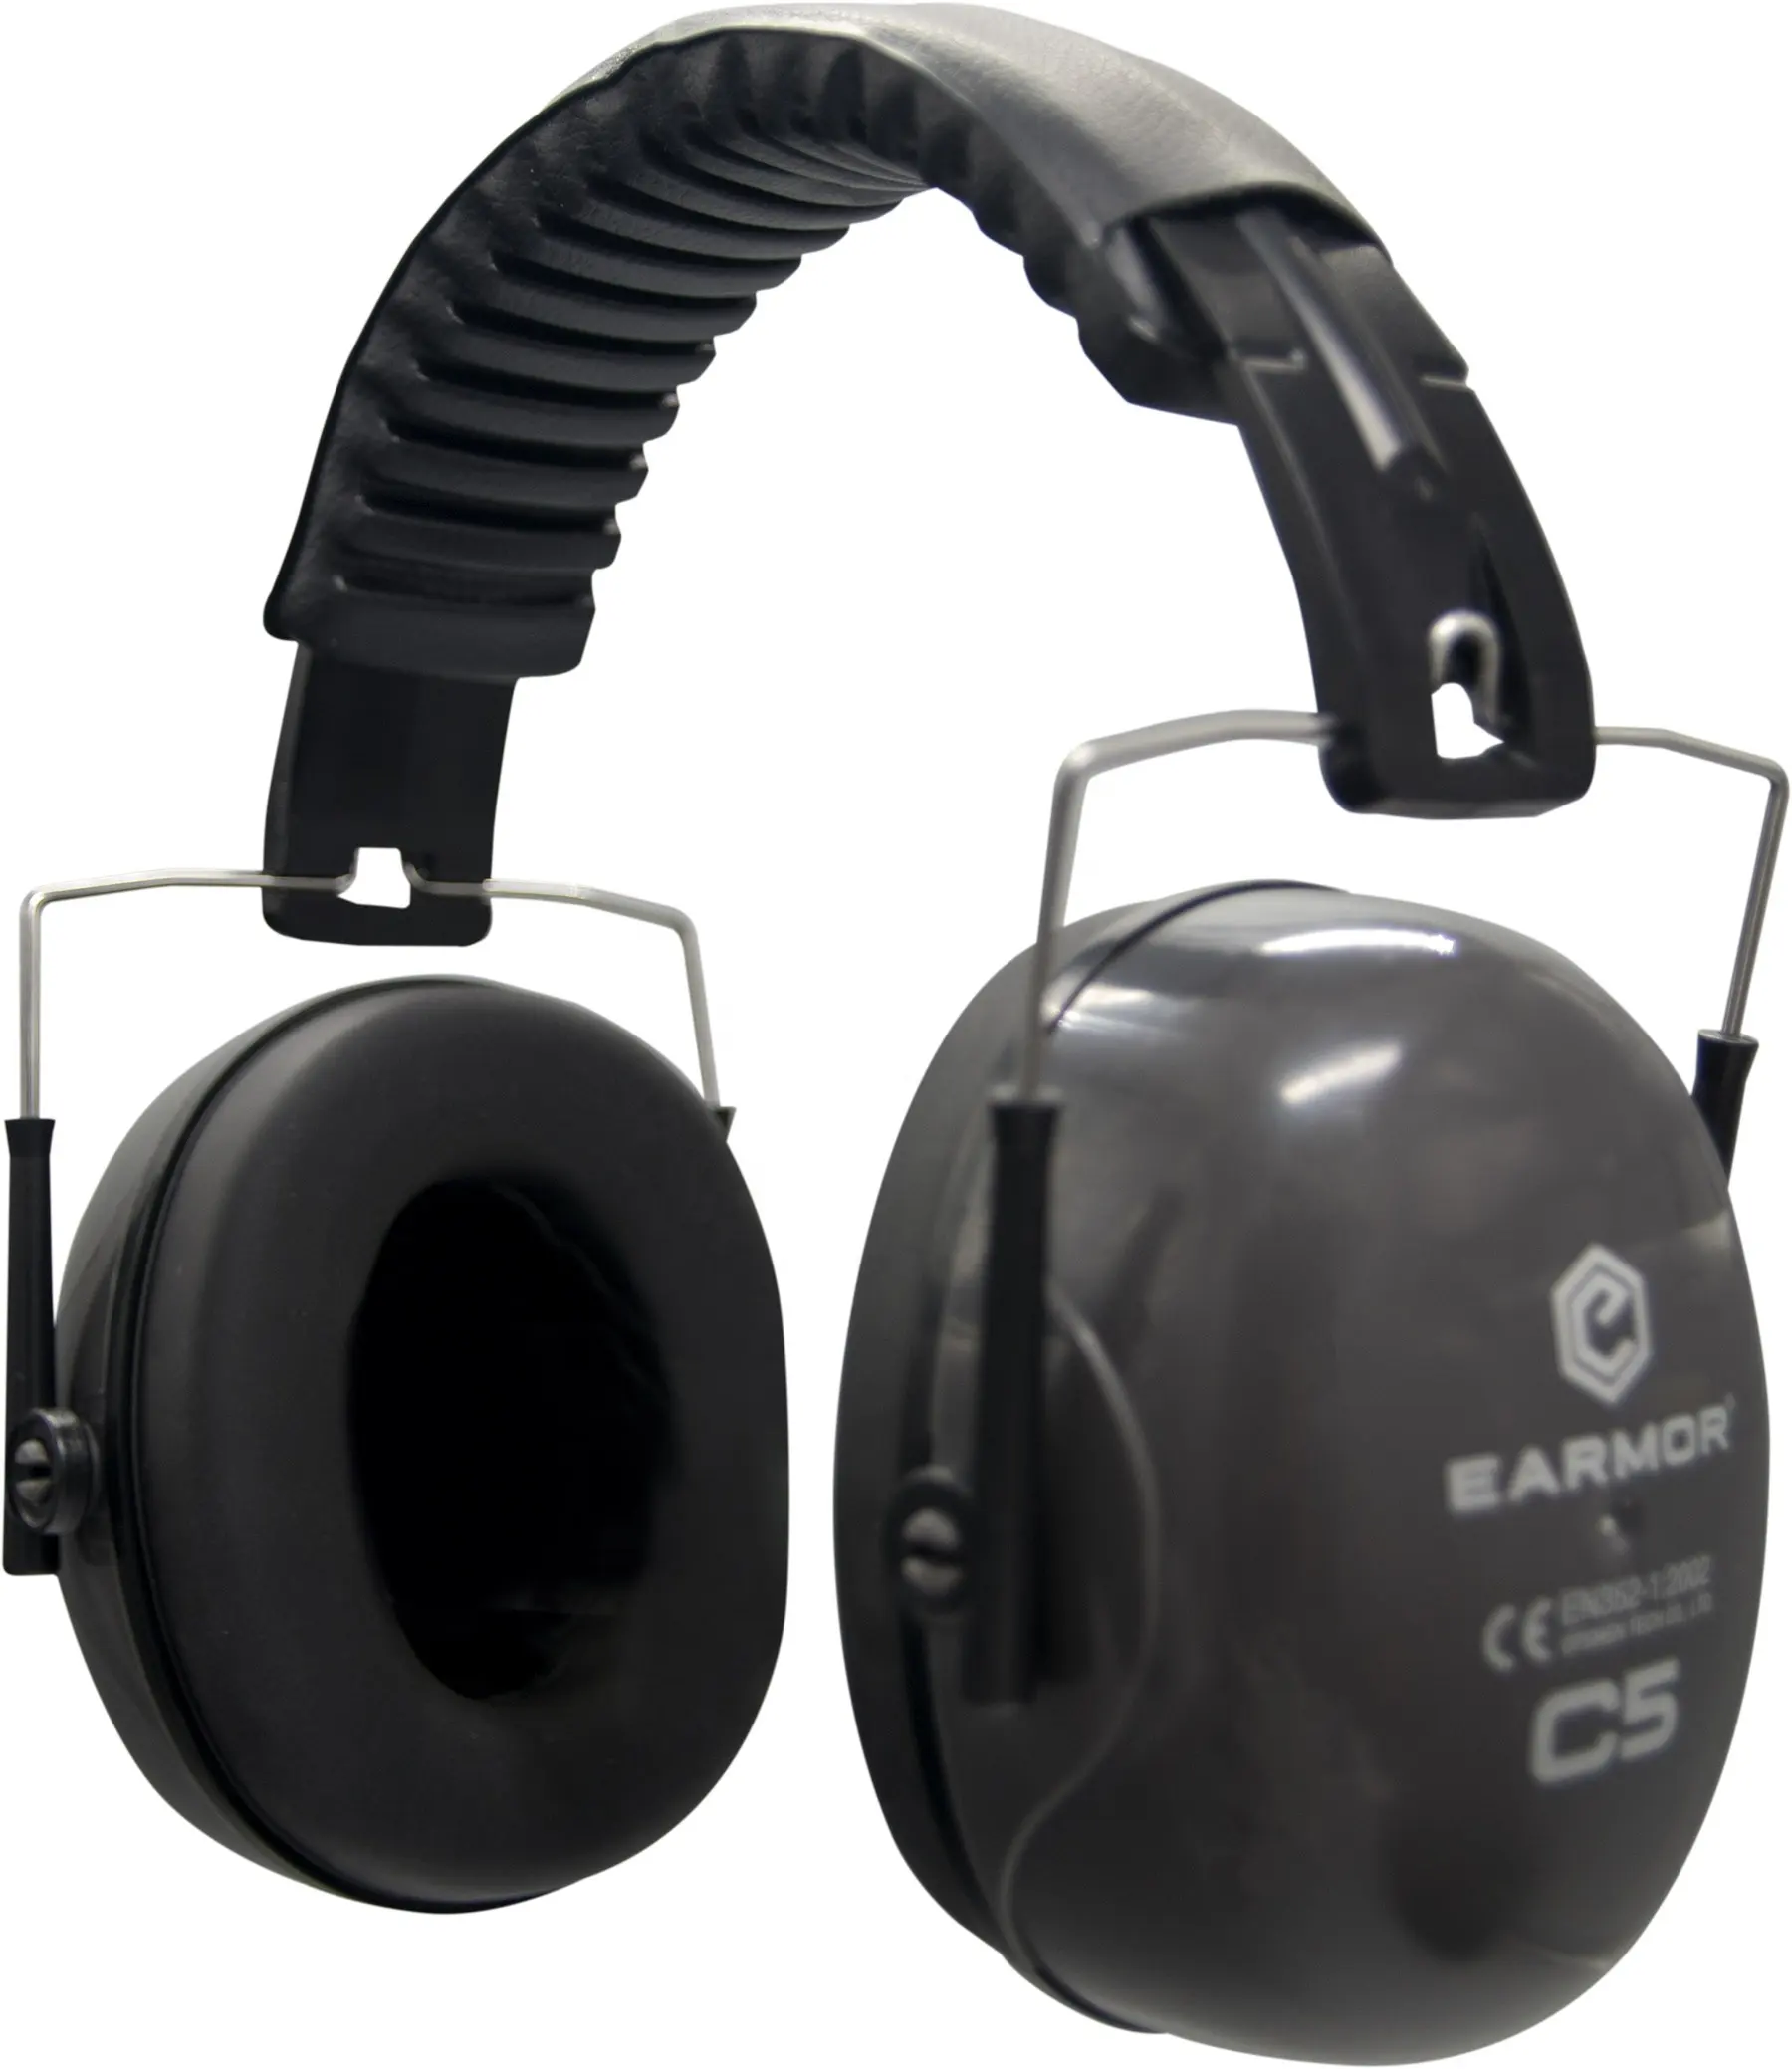 OPSMEN EARMOR C5A NRR Amazon Best Sale Modern Fashion Ear Protection